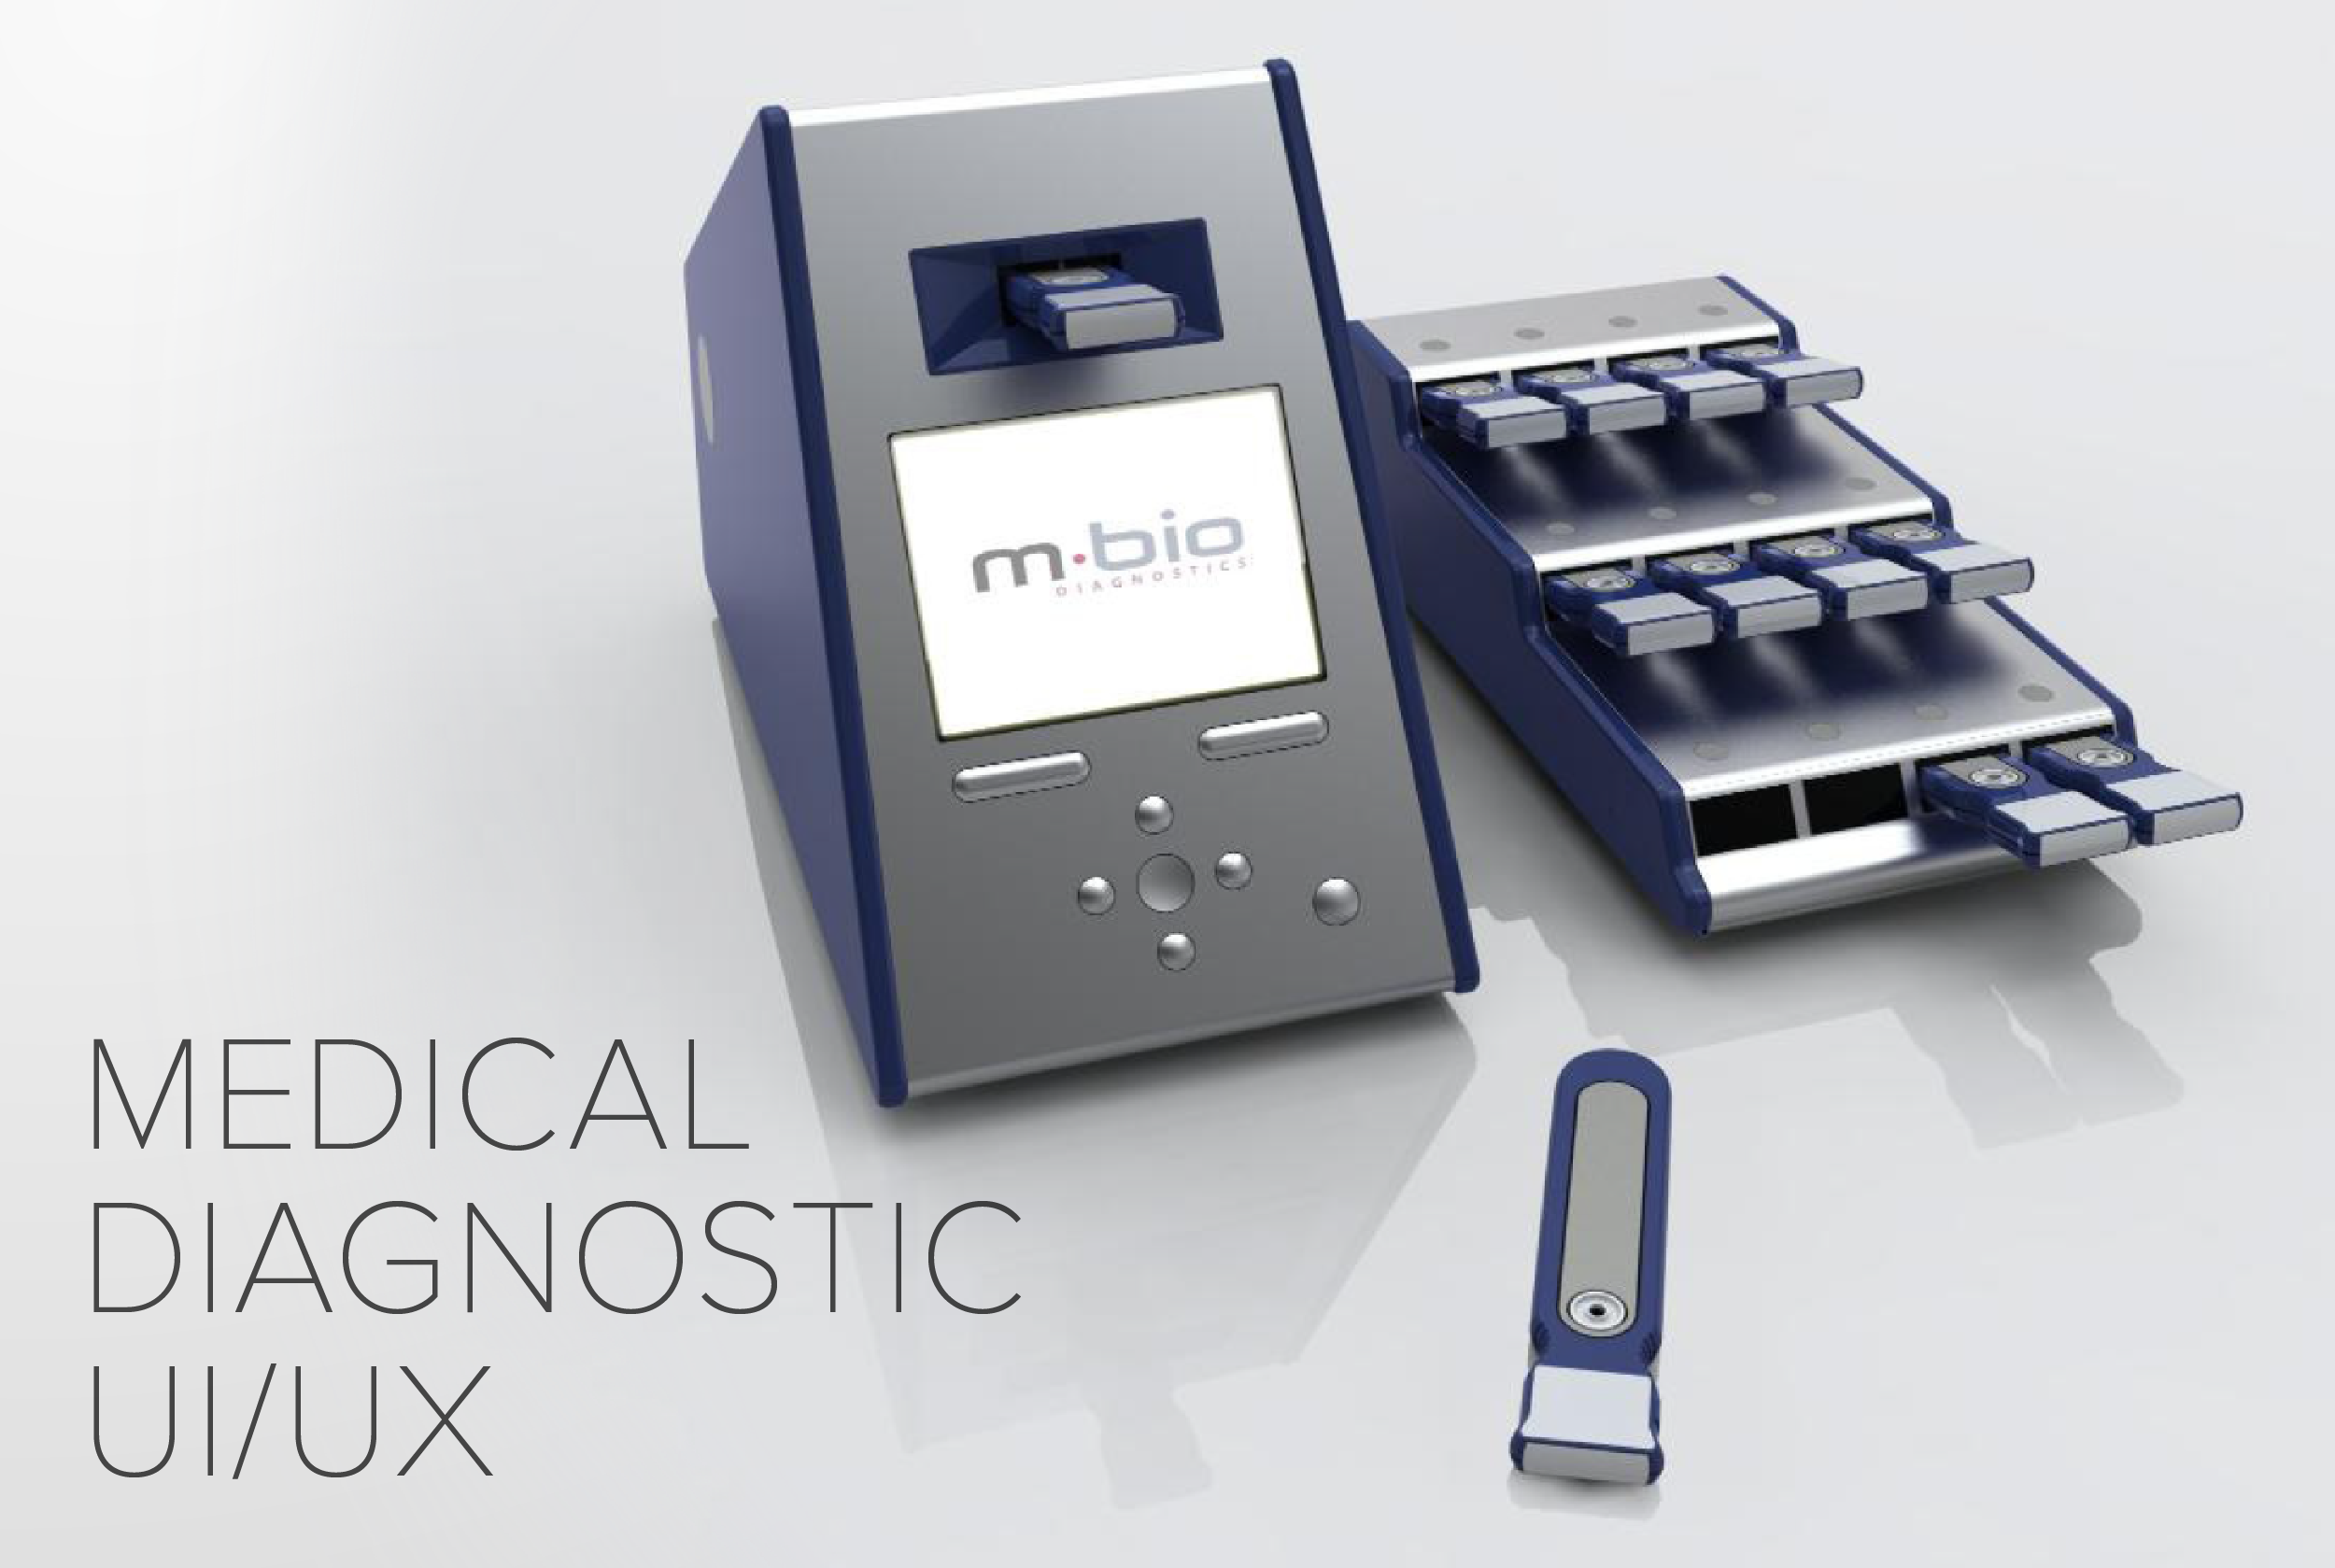 mBio Diagnostic Device